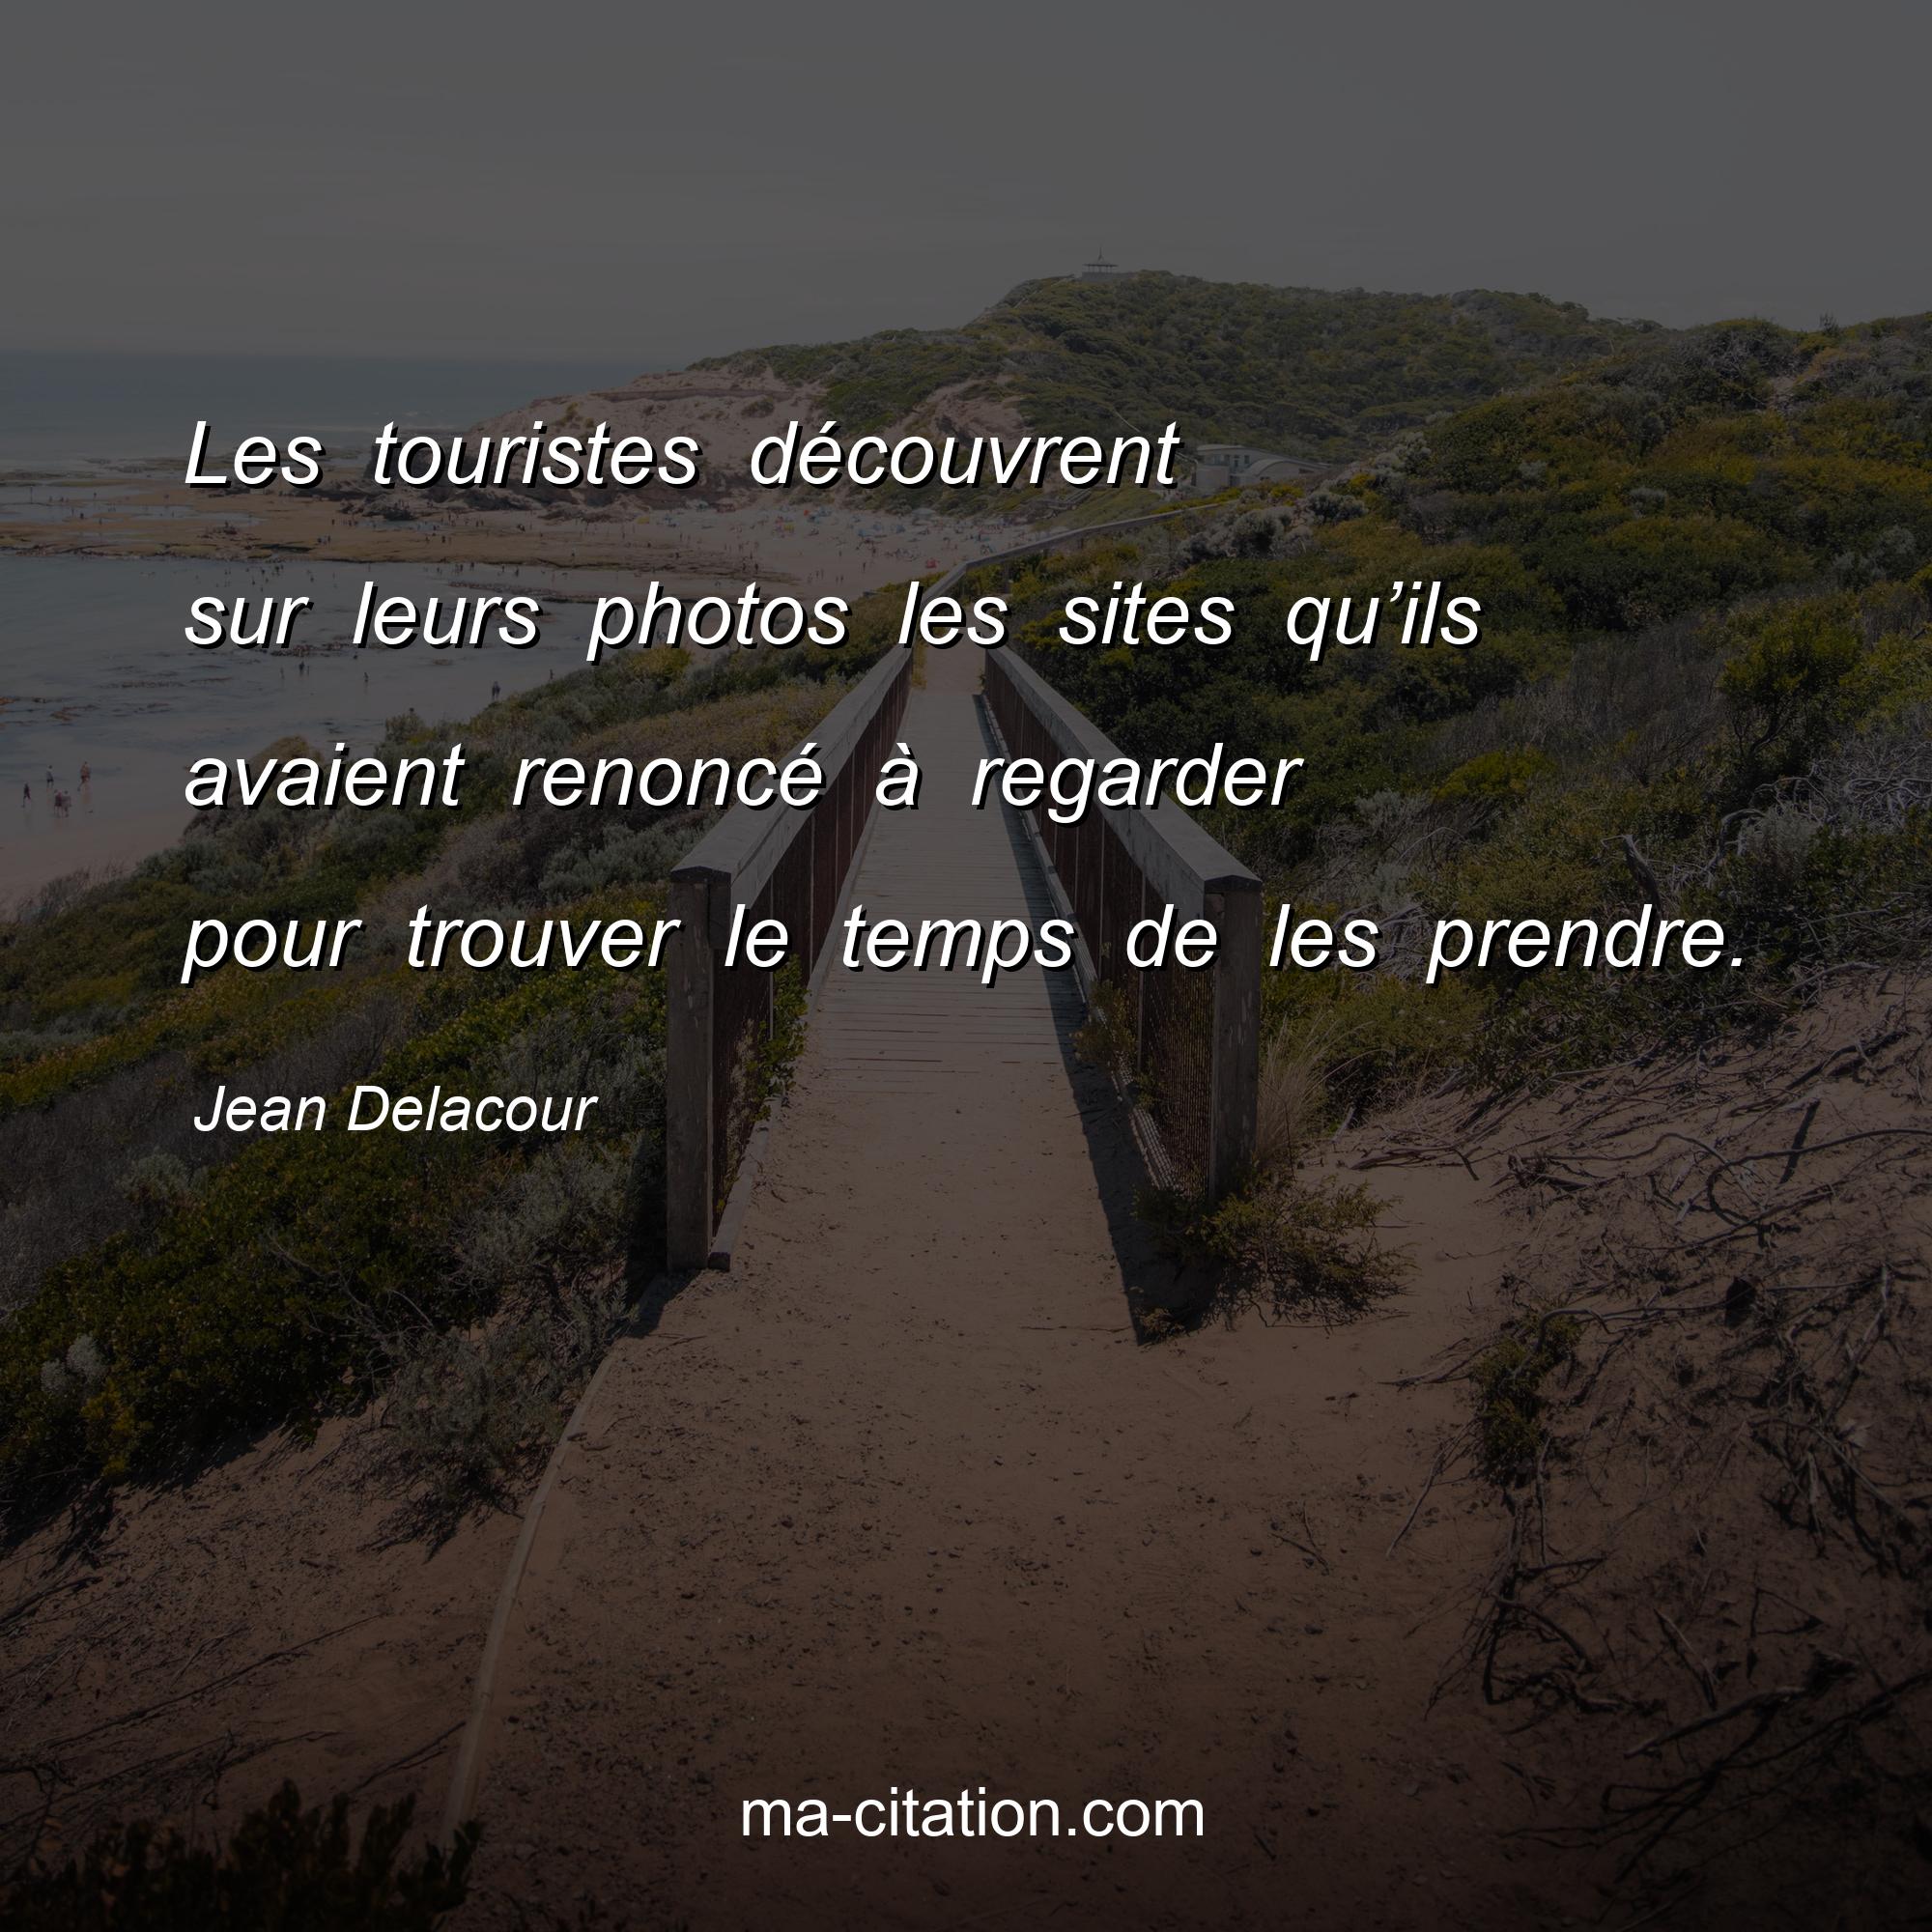 Jean Delacour : Les touristes découvrent sur leurs photos les sites qu’ils avaient renoncé à regarder pour trouver le temps de les prendre.